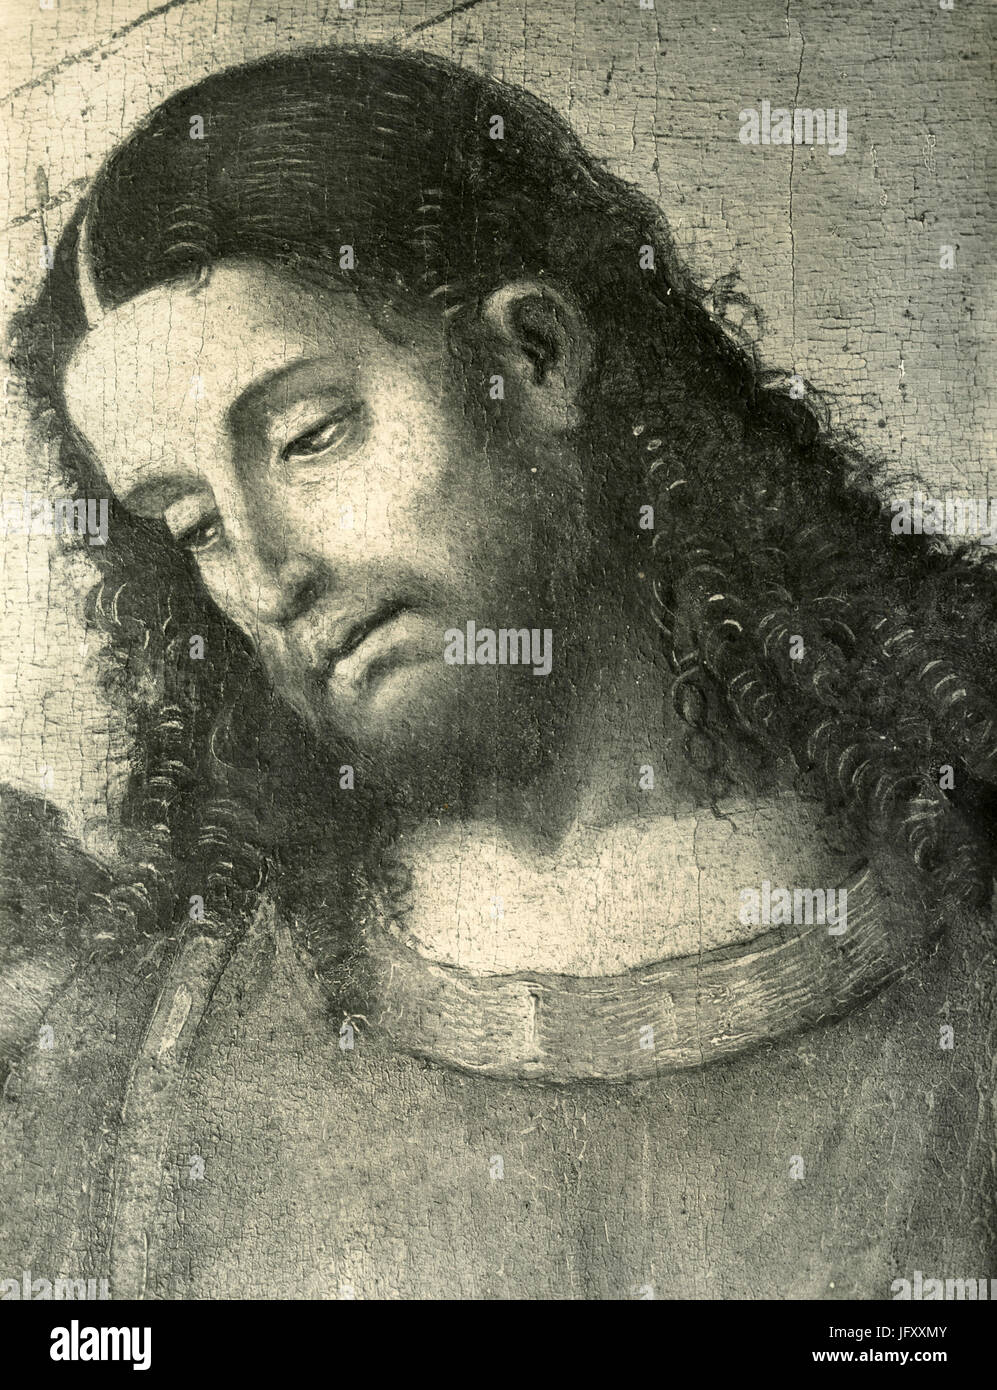 La tête de Jésus Christ, de peinture Détail de l'Institution de l'Eucharistie, de Luca Signorelli, Cortona, Italie Banque D'Images